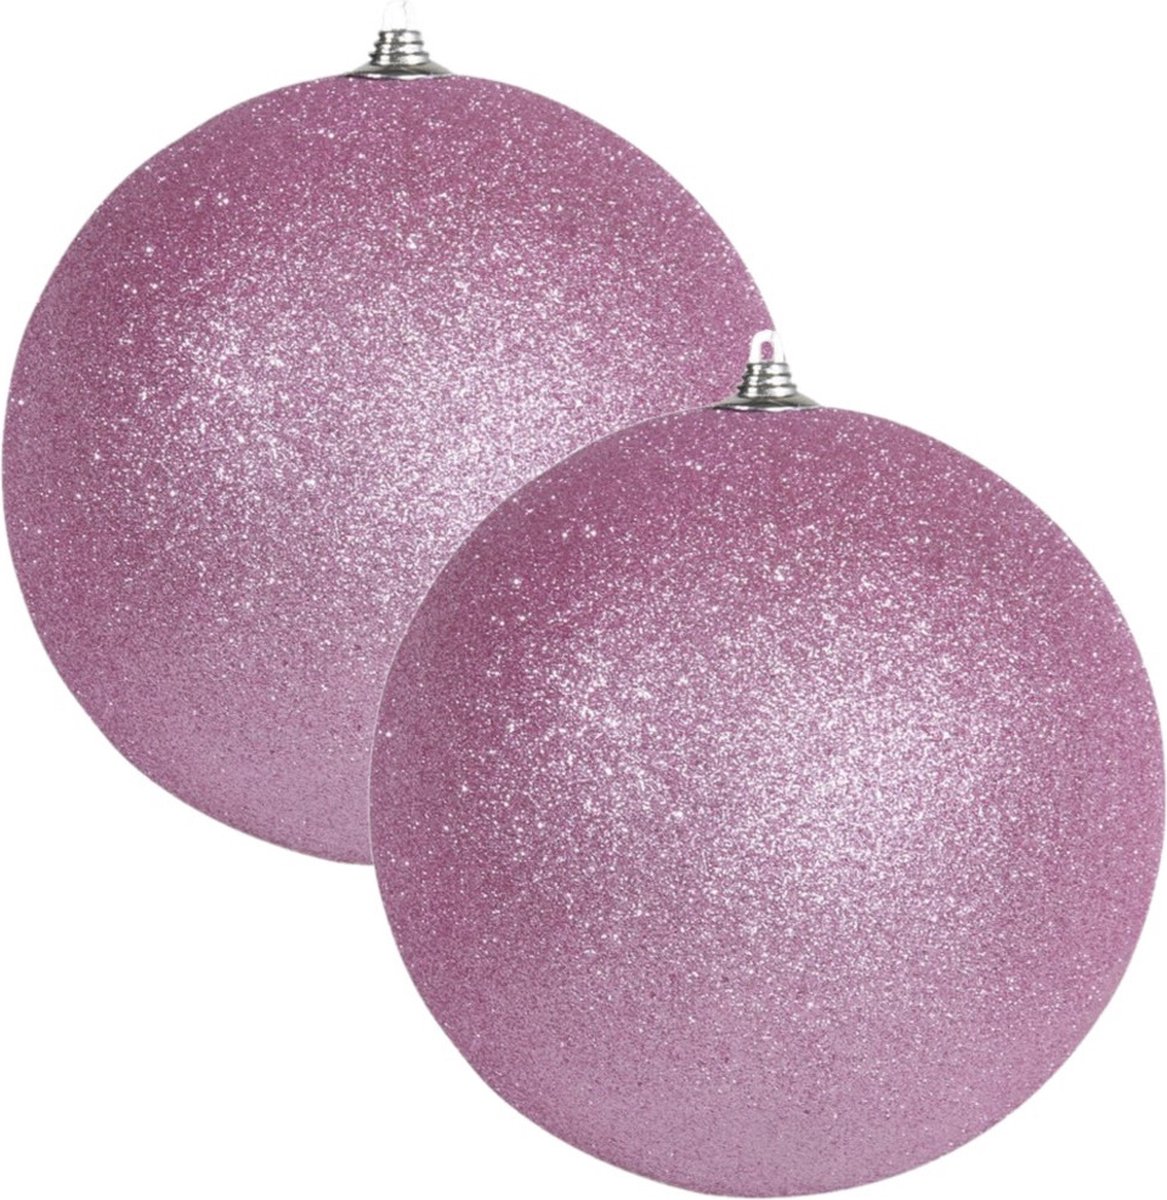 2x Roze grote glitter kerstballen 13,5 cm - hangdecoratie / boomversiering glitter kerstballen